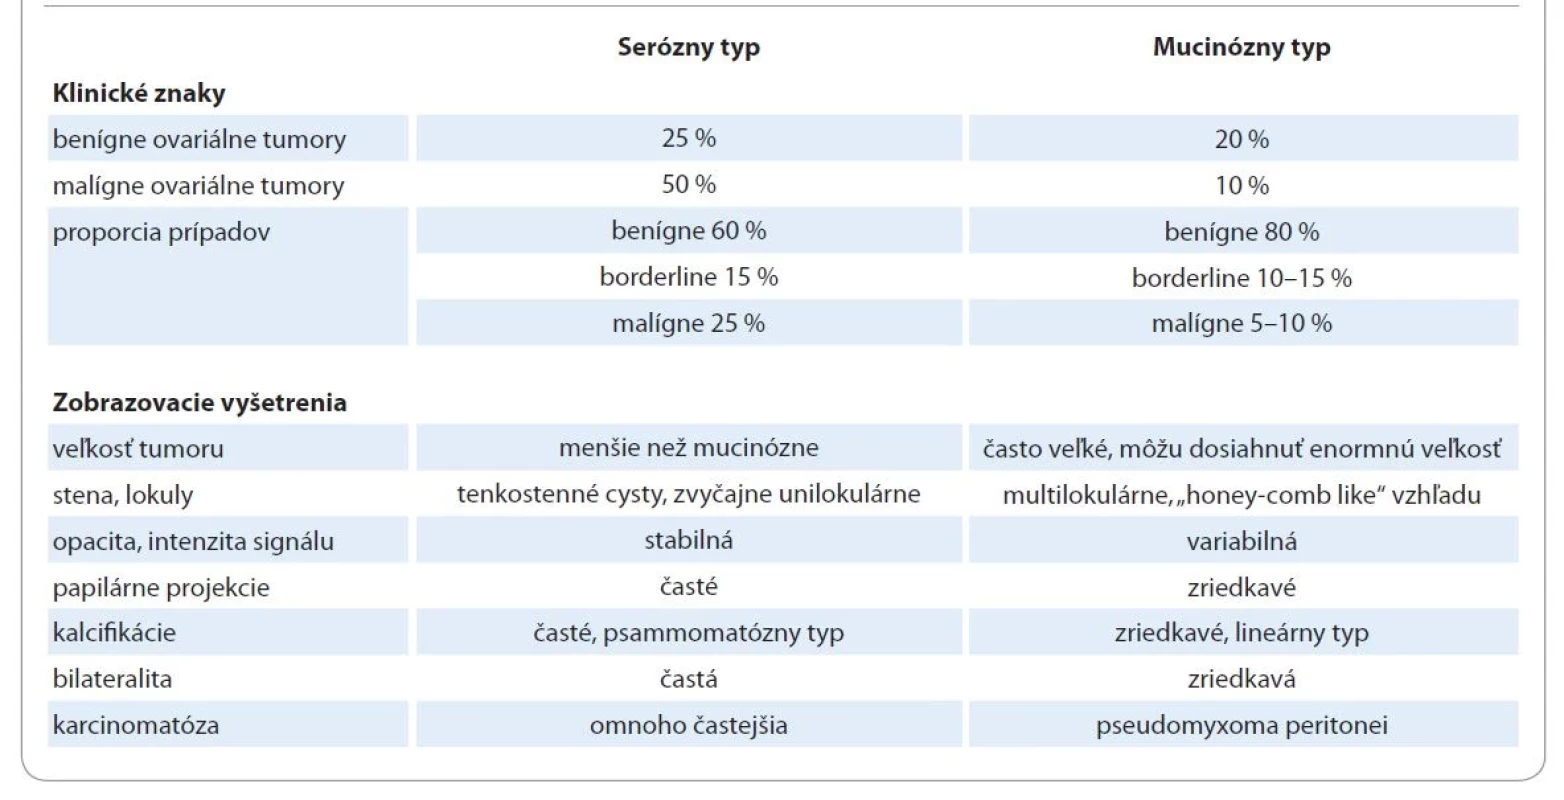 Diferenciálno-diagnostické rozdiely medzi seróznymi a mucinóznymi epitelovými nádormi vaječníka. Prevzaté z [1].